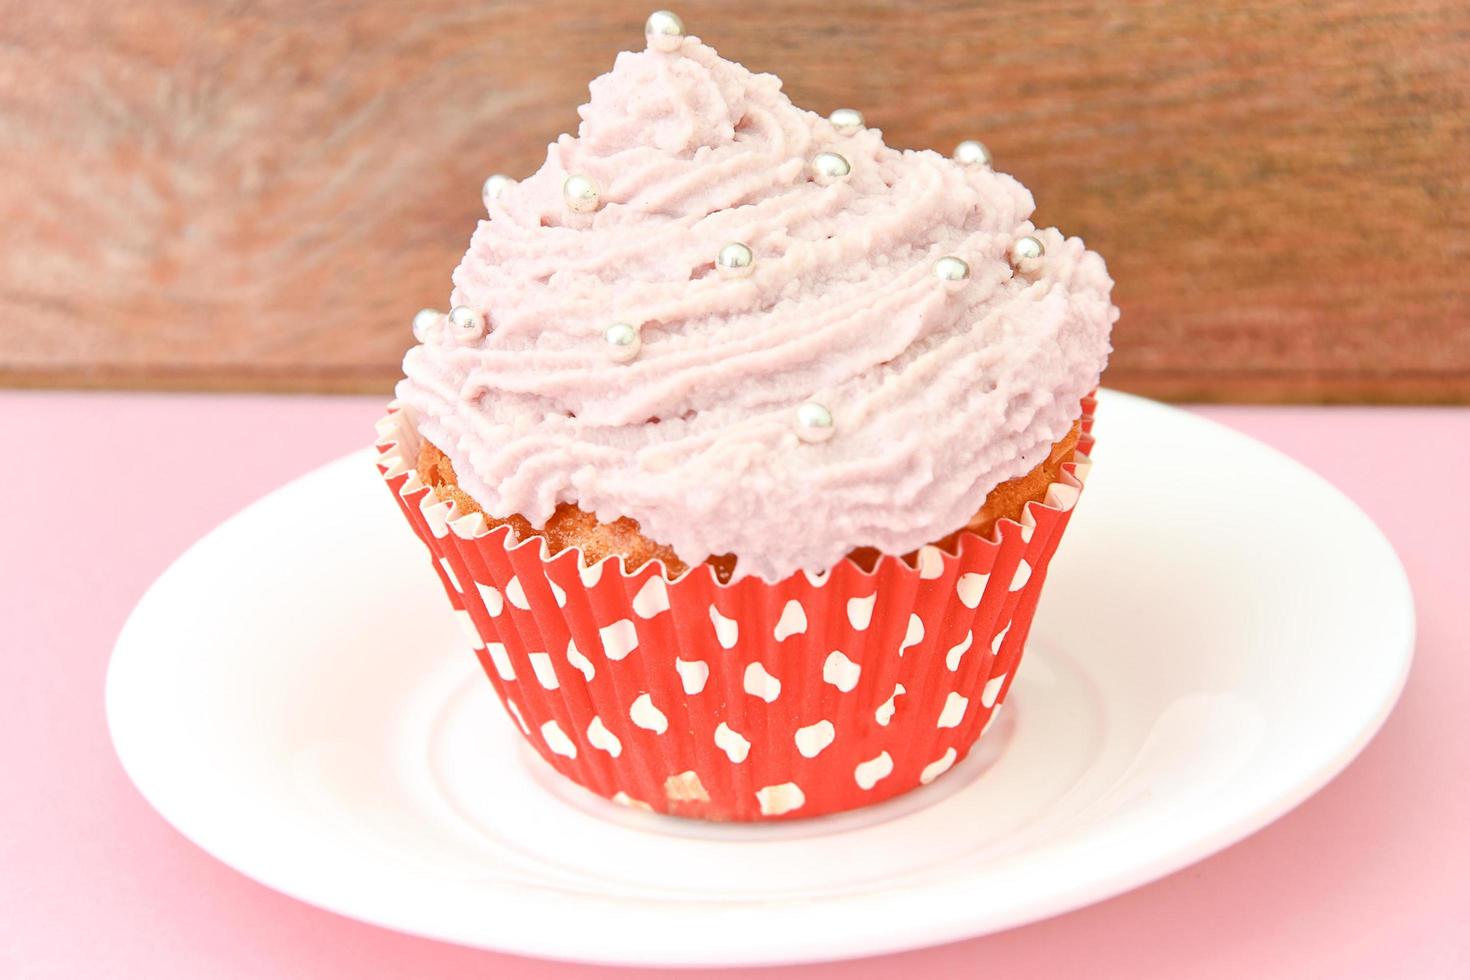 gâteau à la crème, cupcake sur fond rose. photo